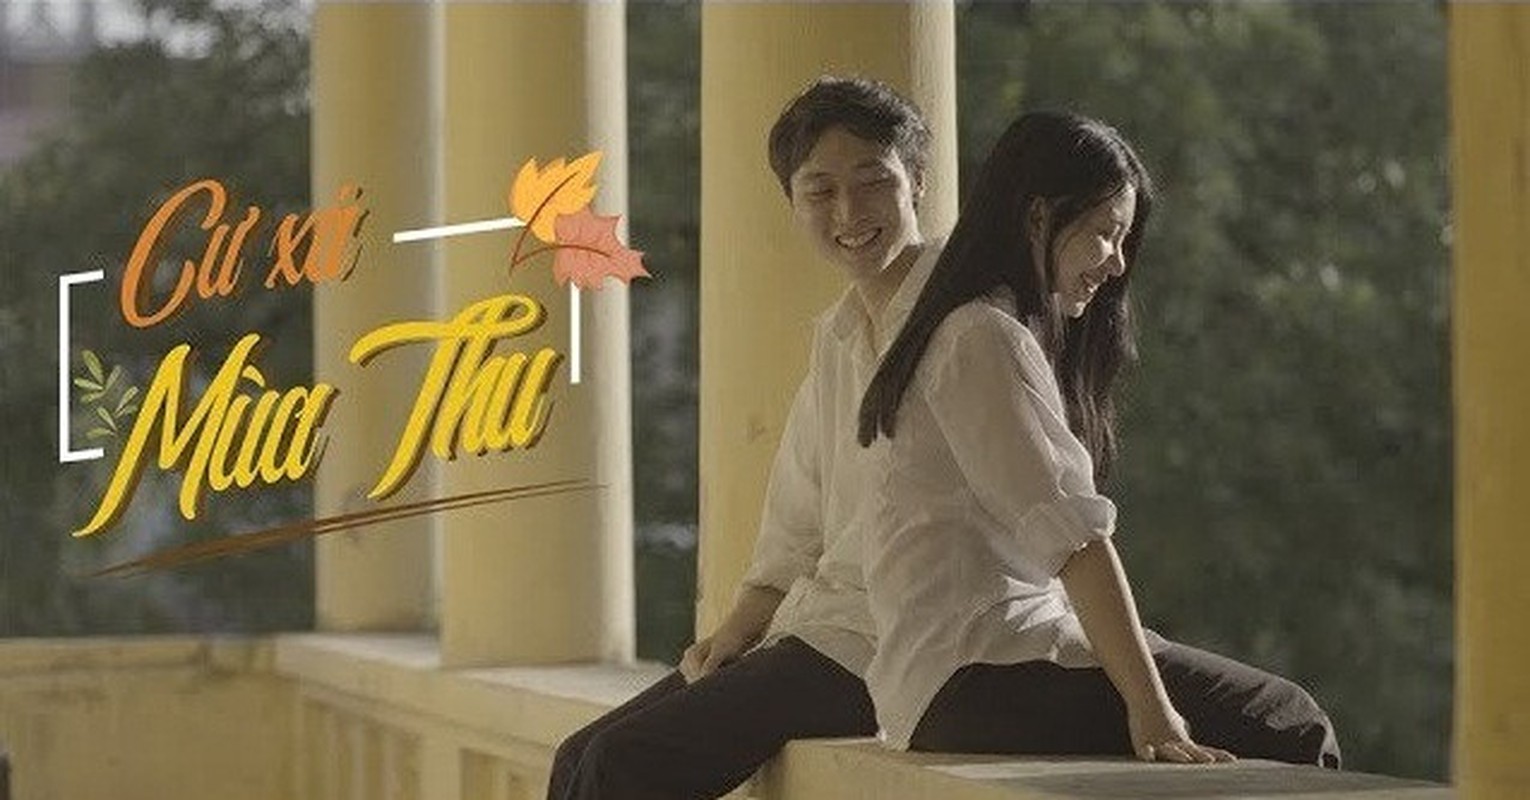 Hot girl Man Tien va chuyen tinh ngot ngao ben nguoi yeu dien trai-Hinh-5